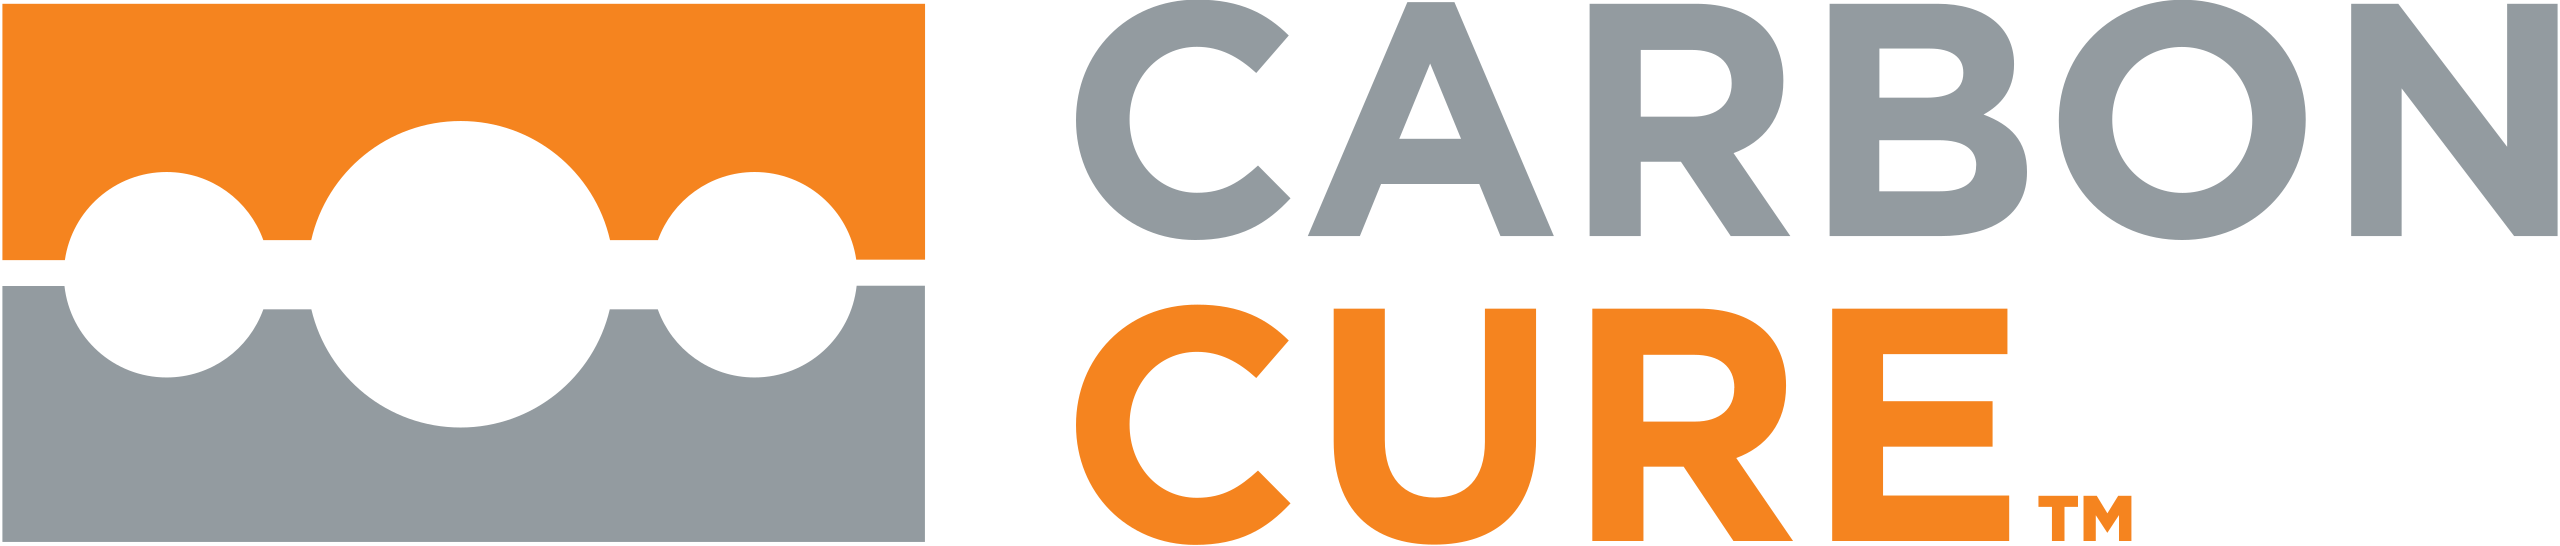 CarbonCure-logo